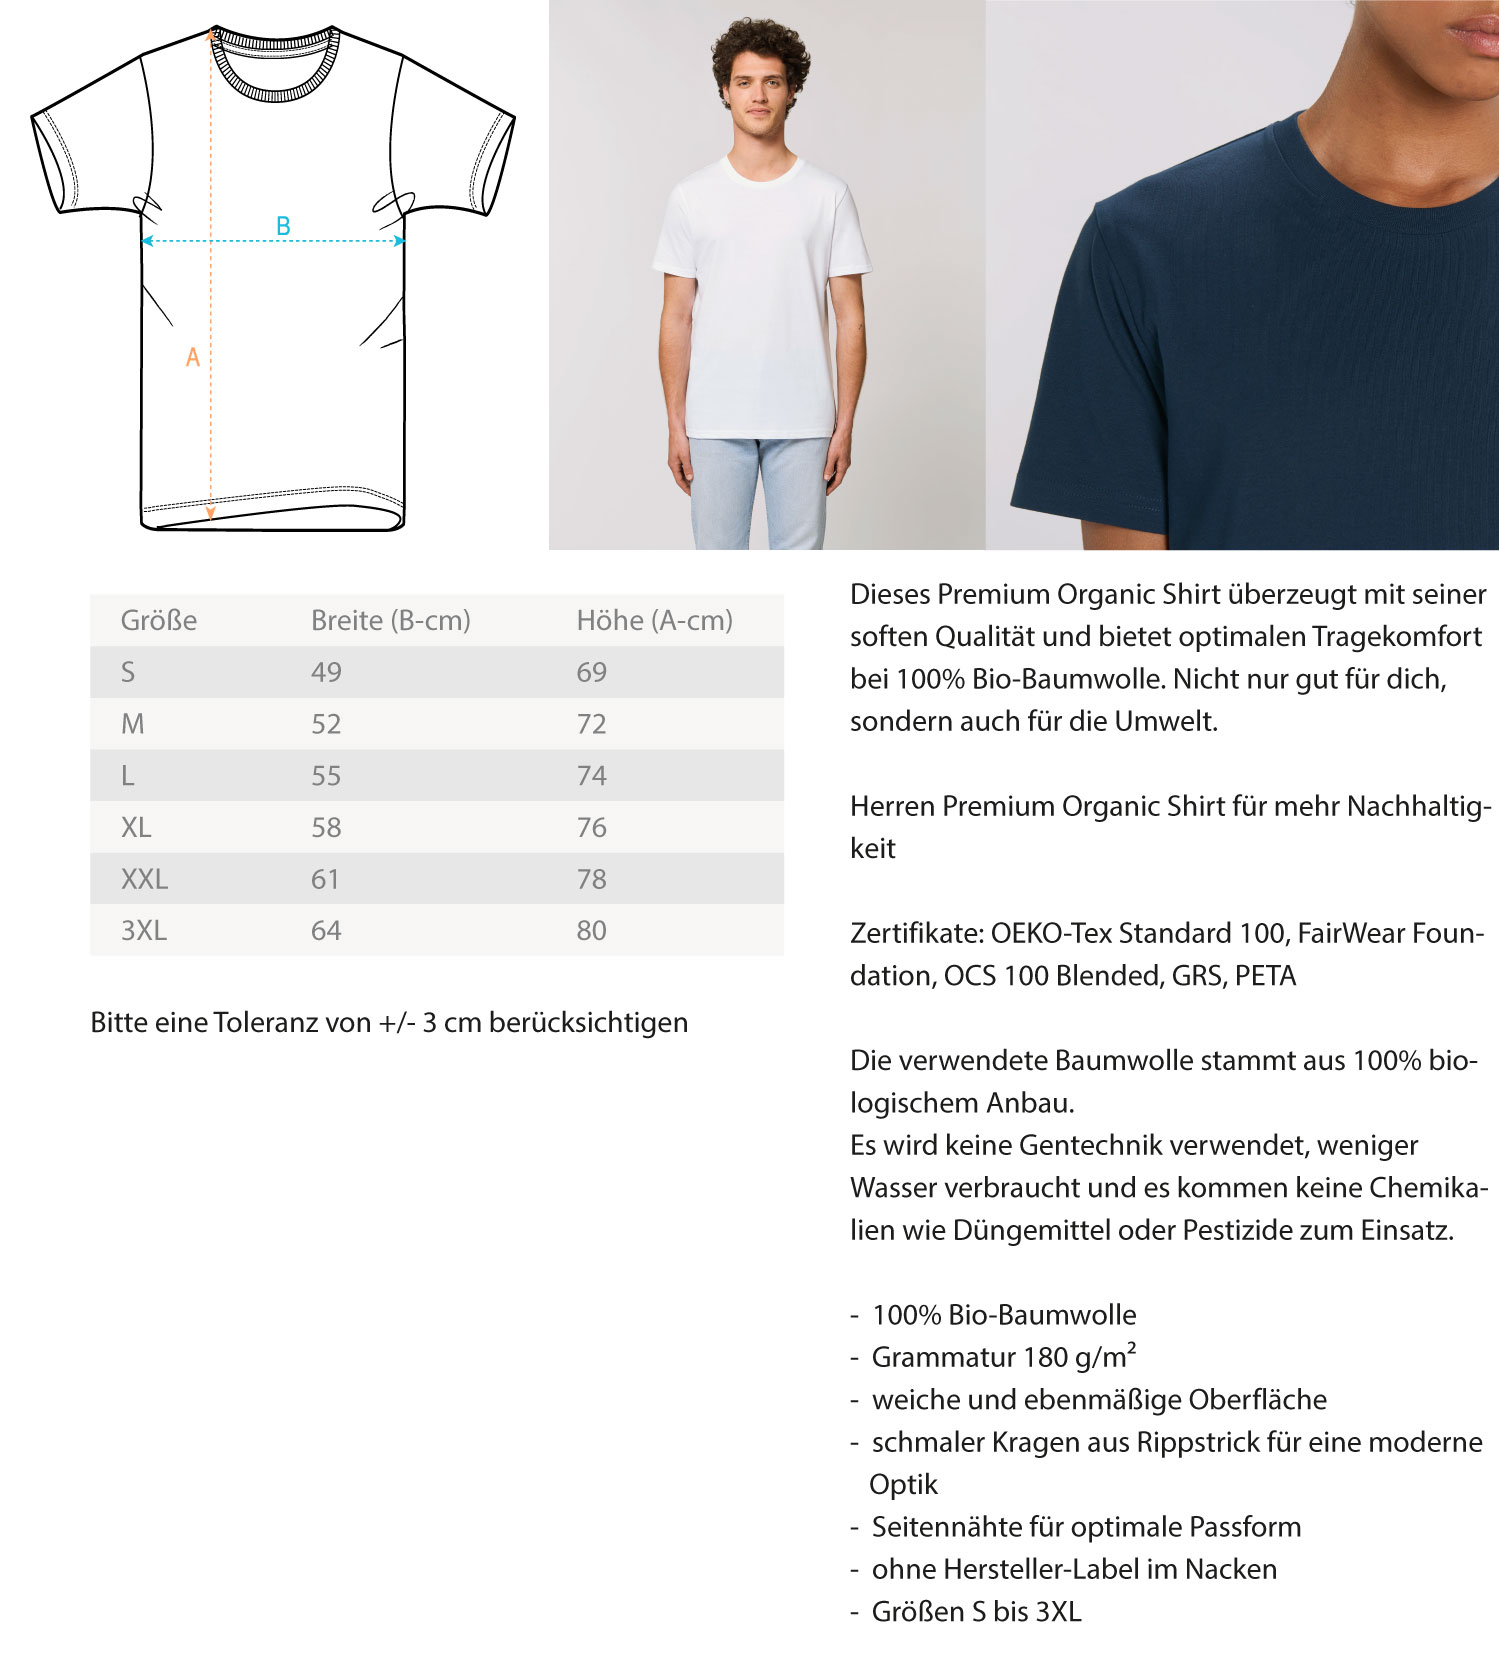 See Park View (Herren/Unisex Premium Organic Shirt ST/ST) Miro Lange Art